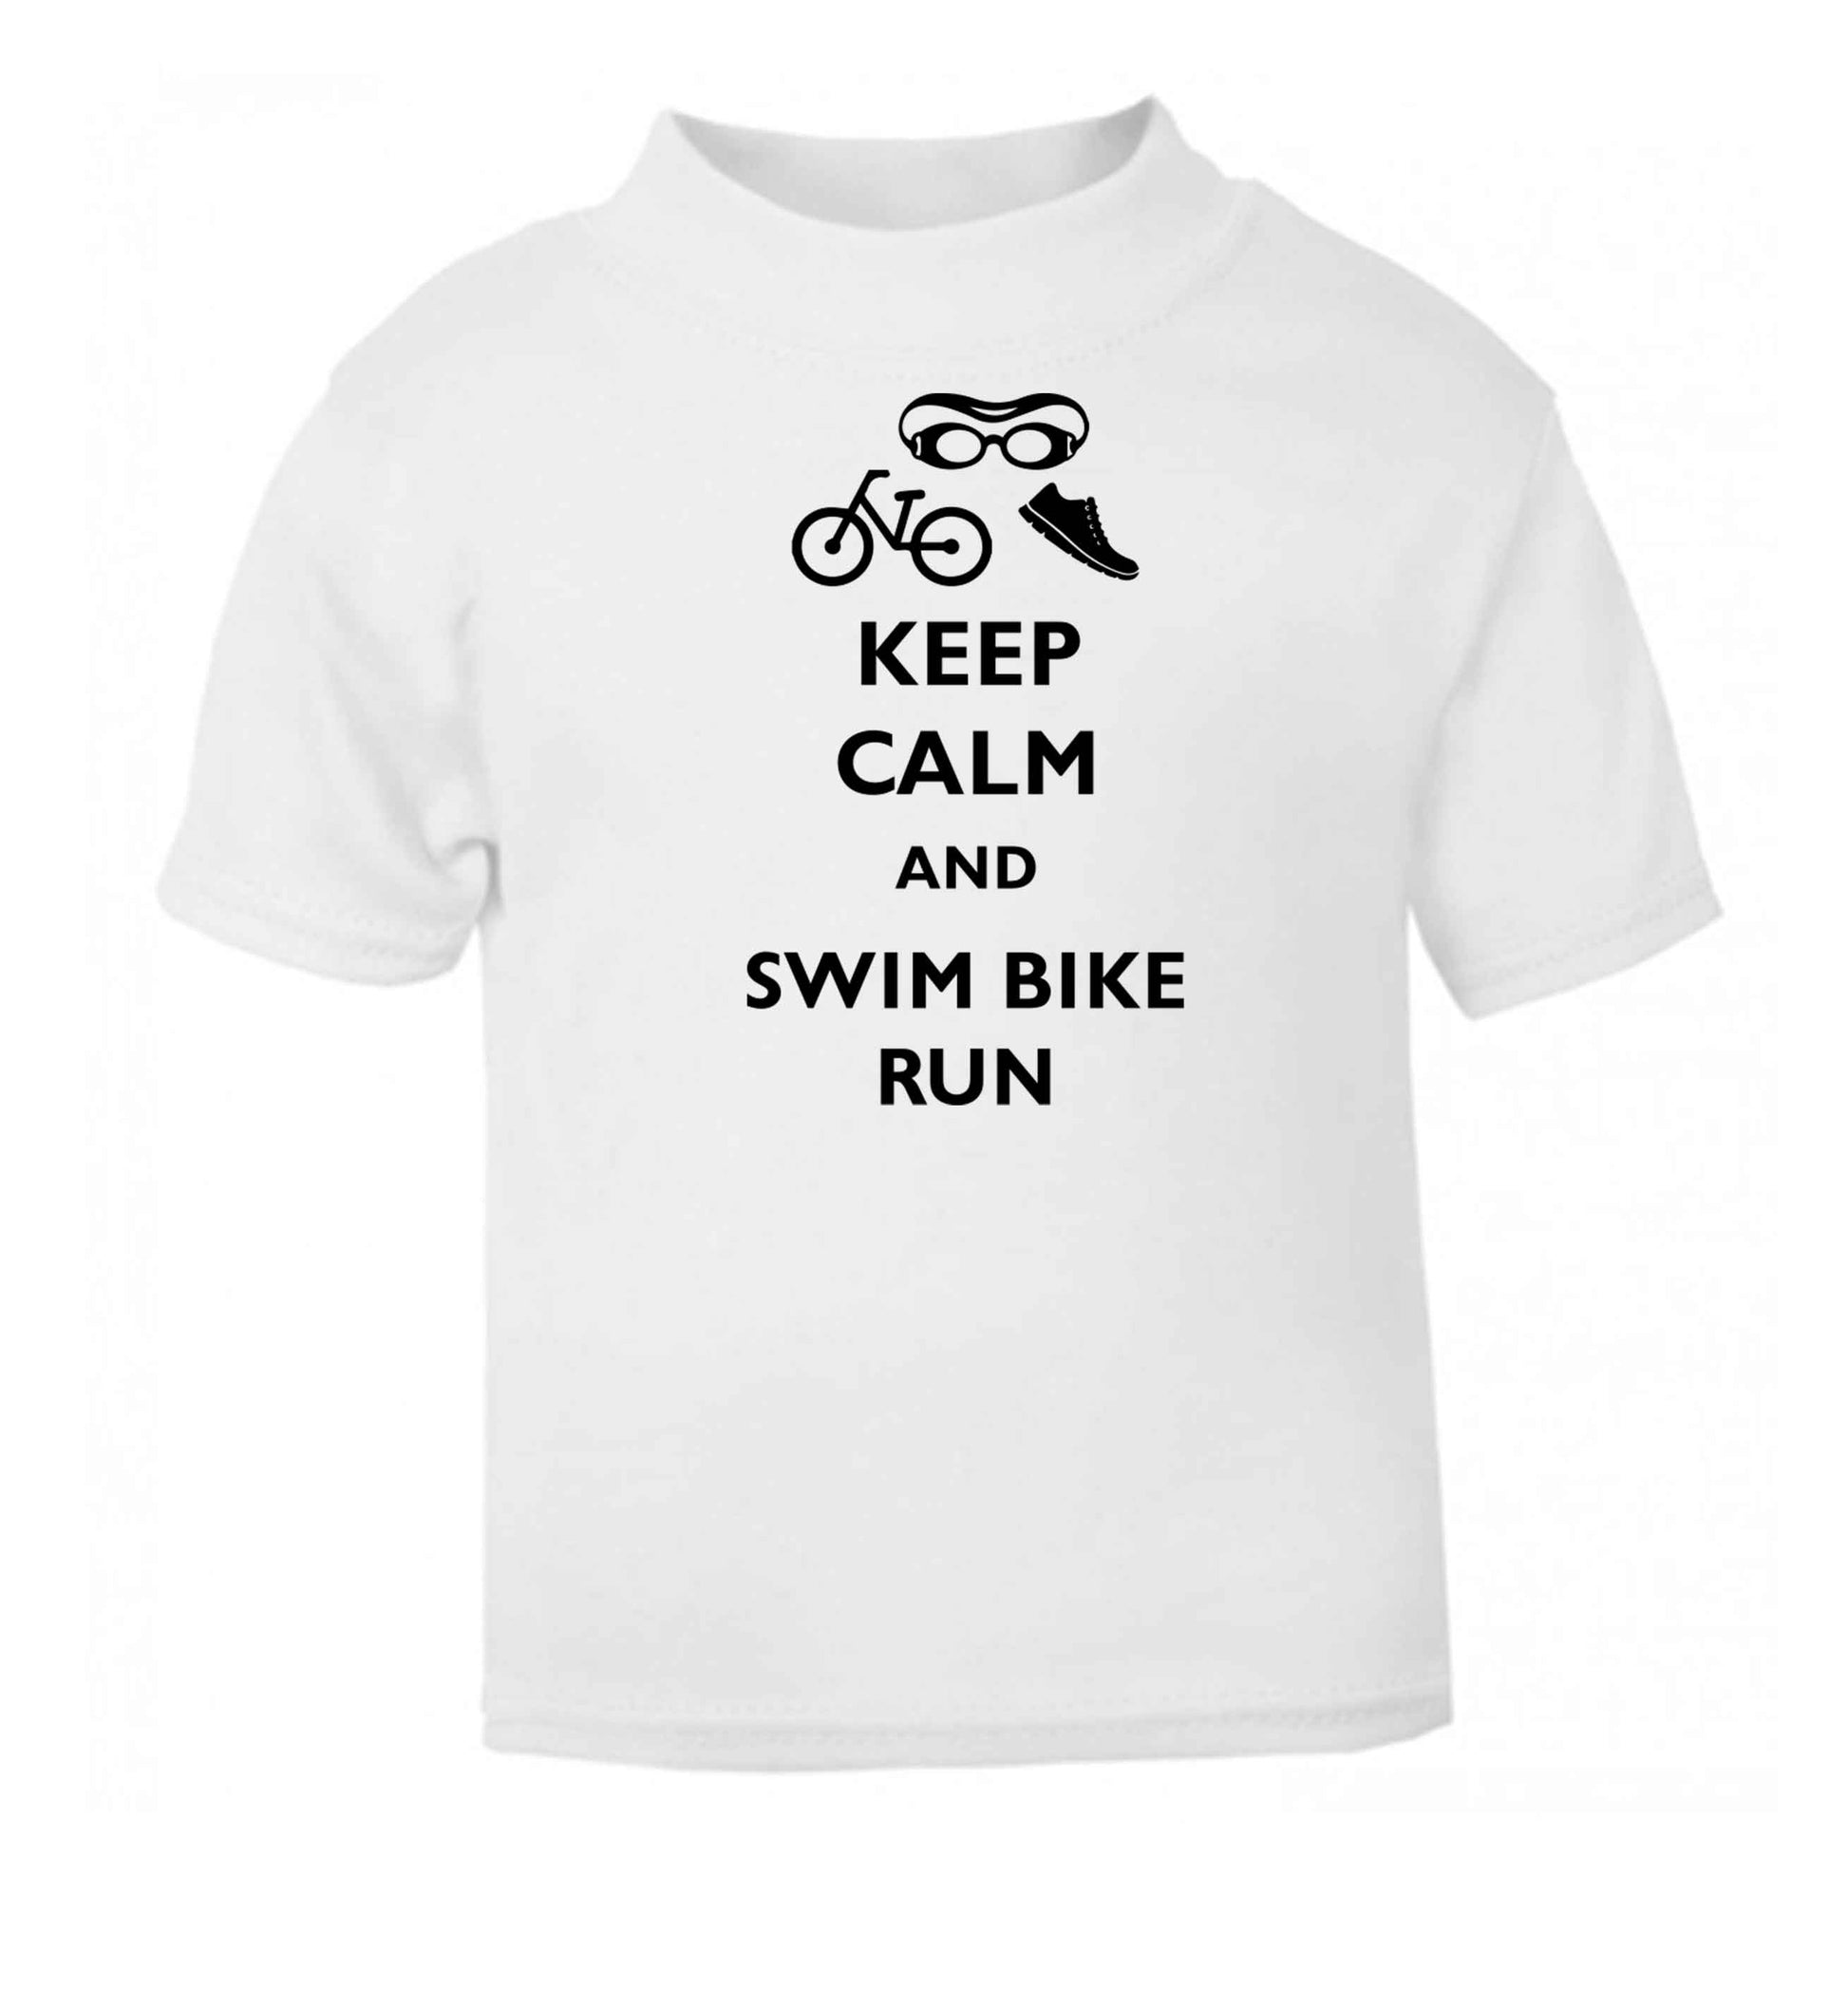 Keep calm and swim bike run white baby toddler Tshirt 2 Years